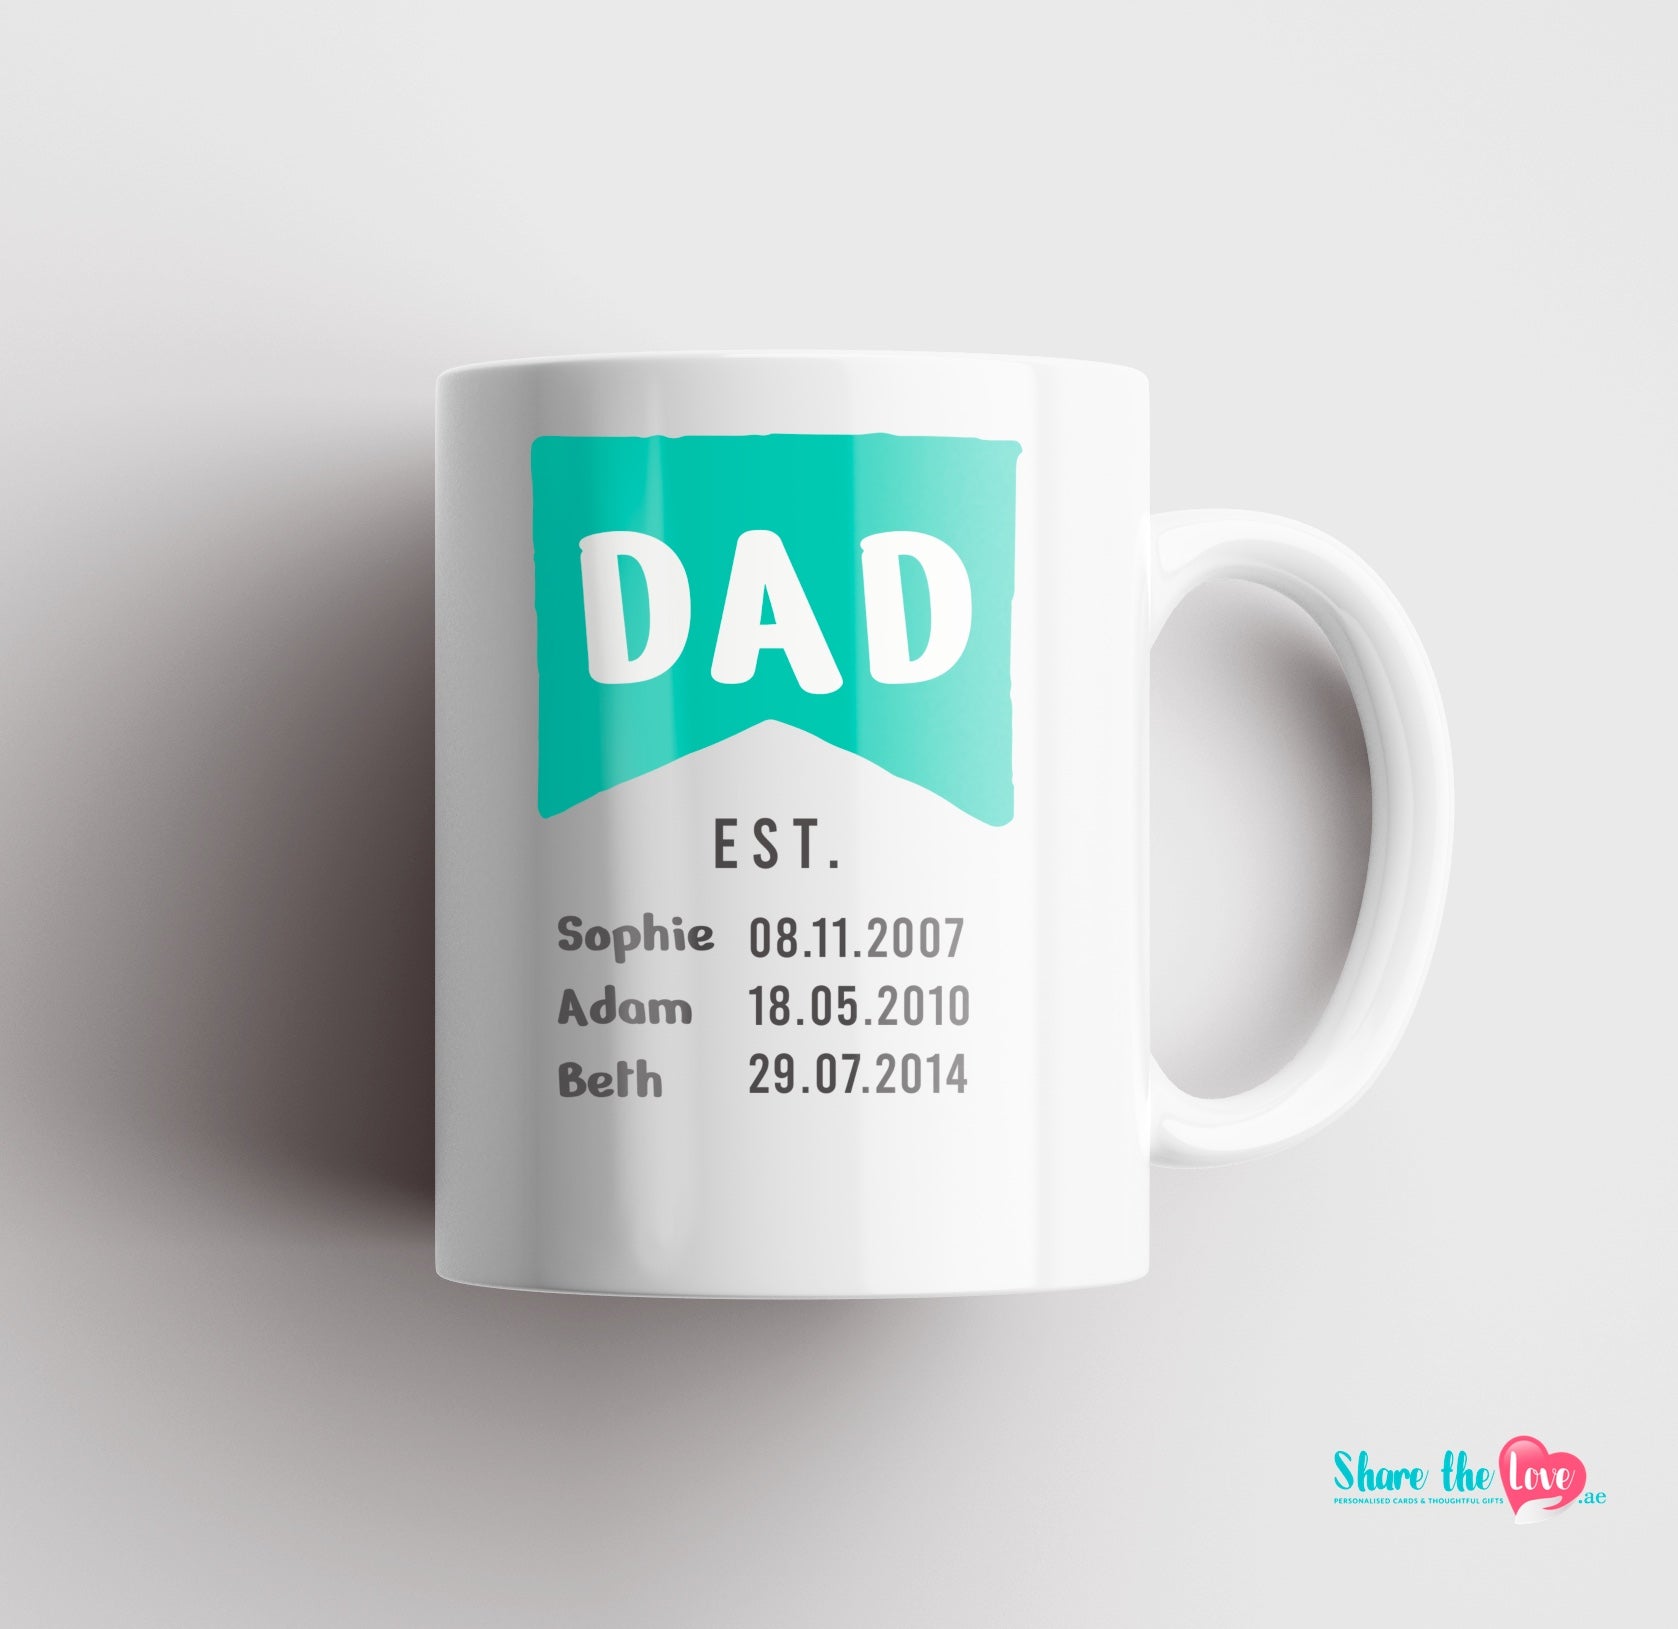 Dad EST mug